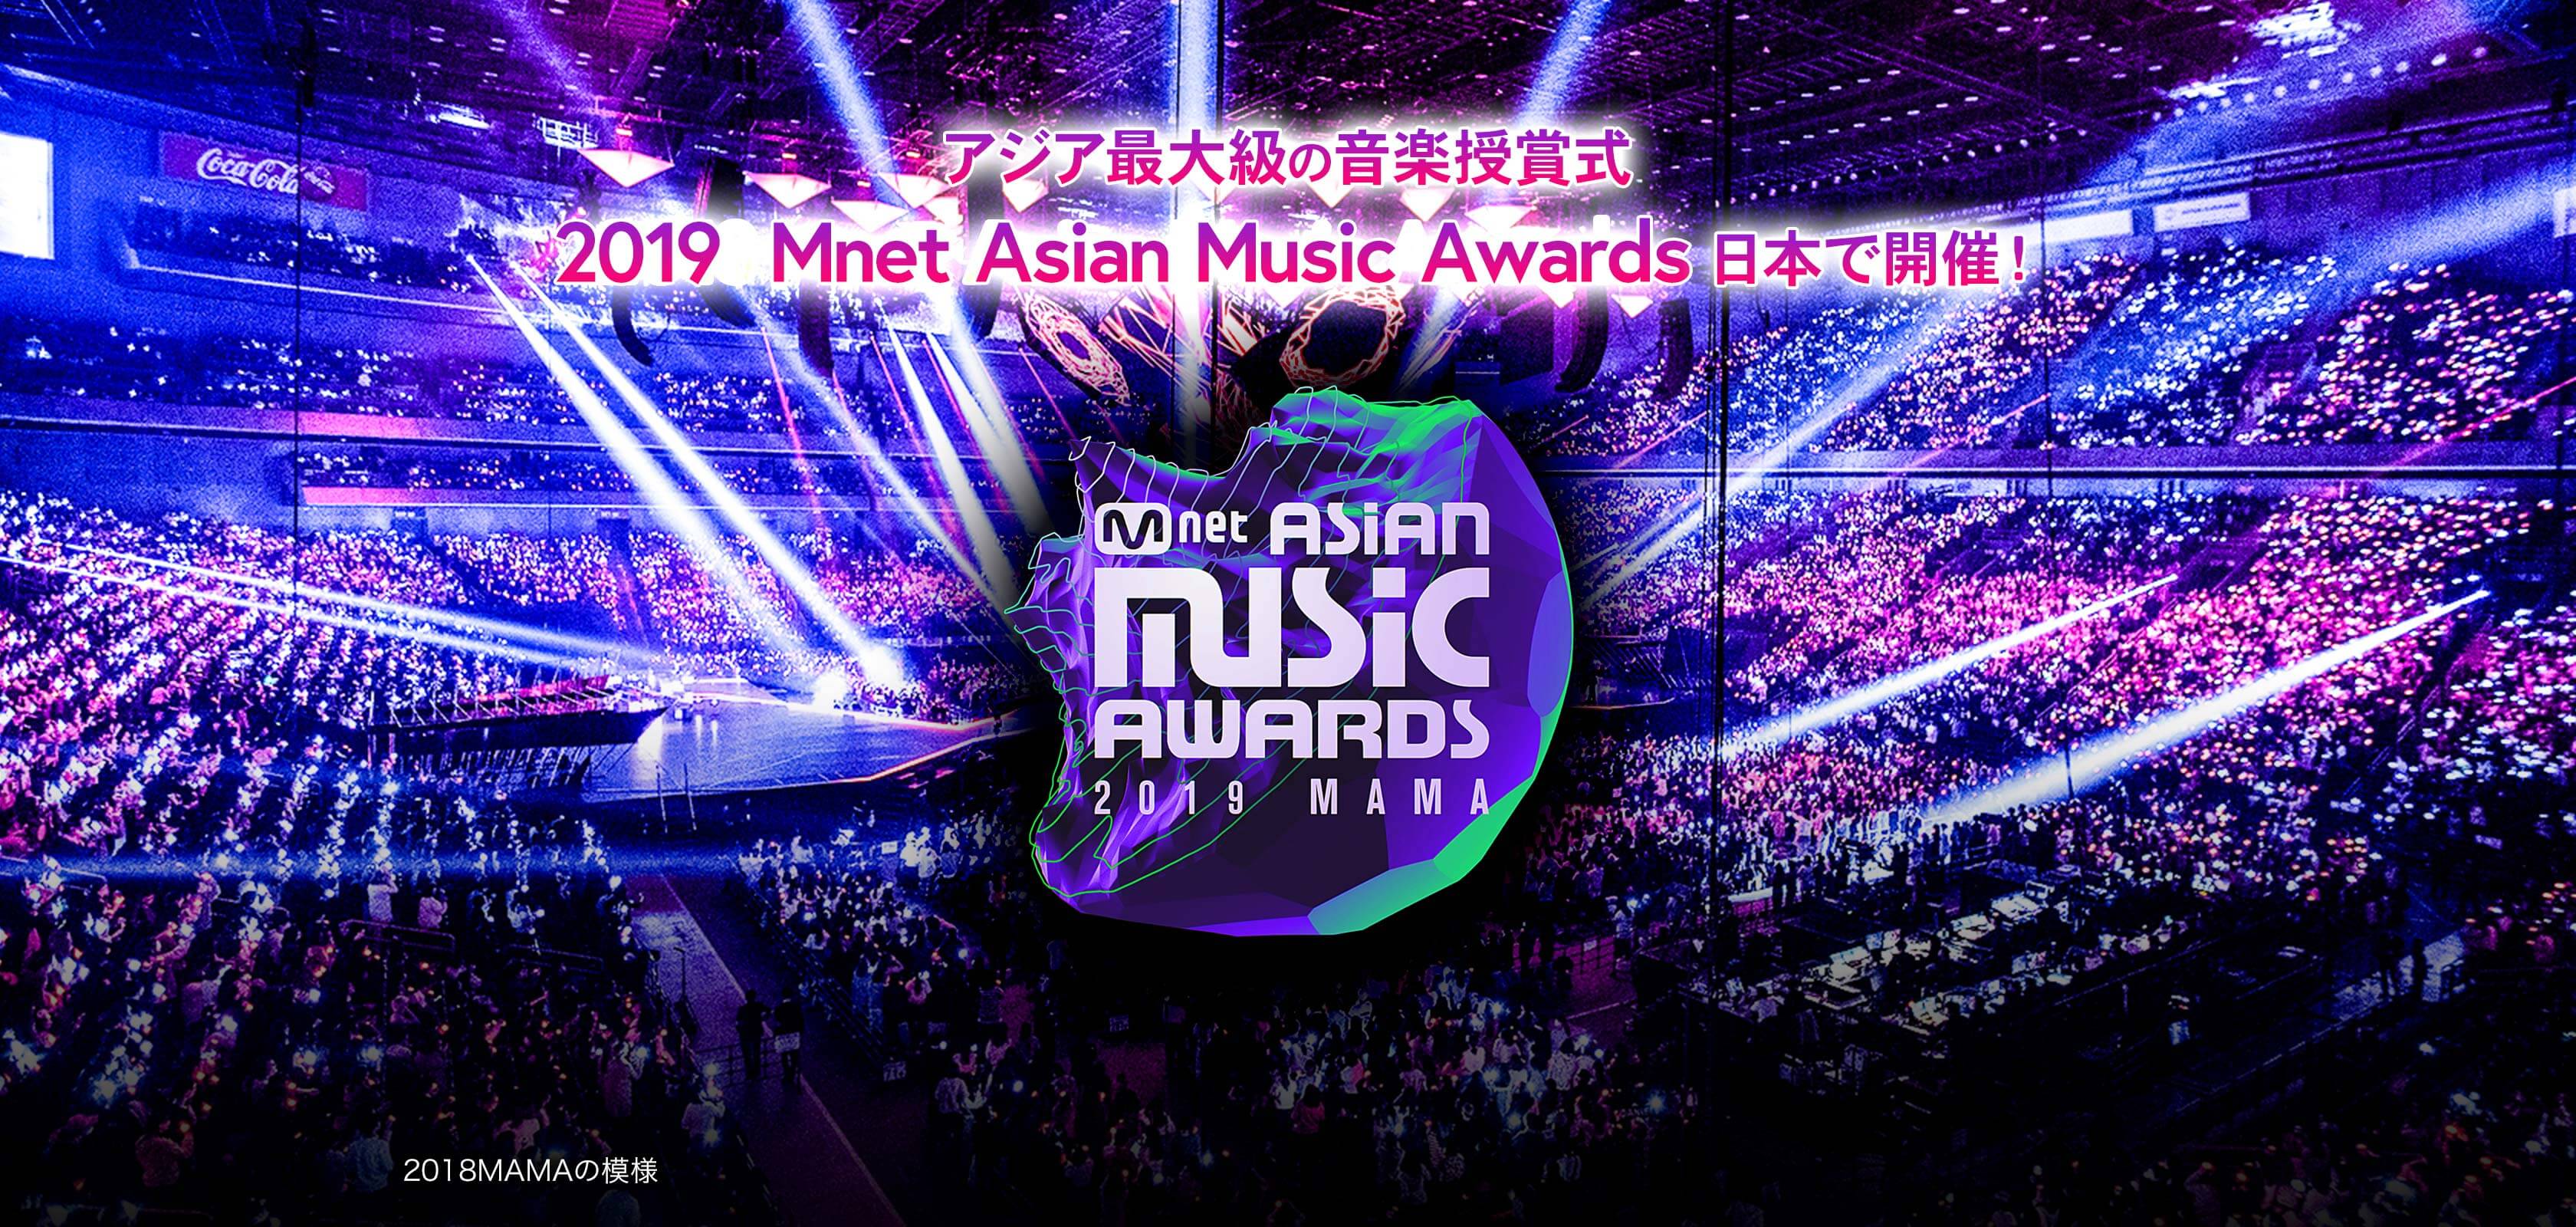 アジア最大級の音楽授賞式 2019 Mnet Asian Music Awards 日本で開催！ 2018MAMAの模様 ©CJ ENM Co., Ltd, All Rights Reserved